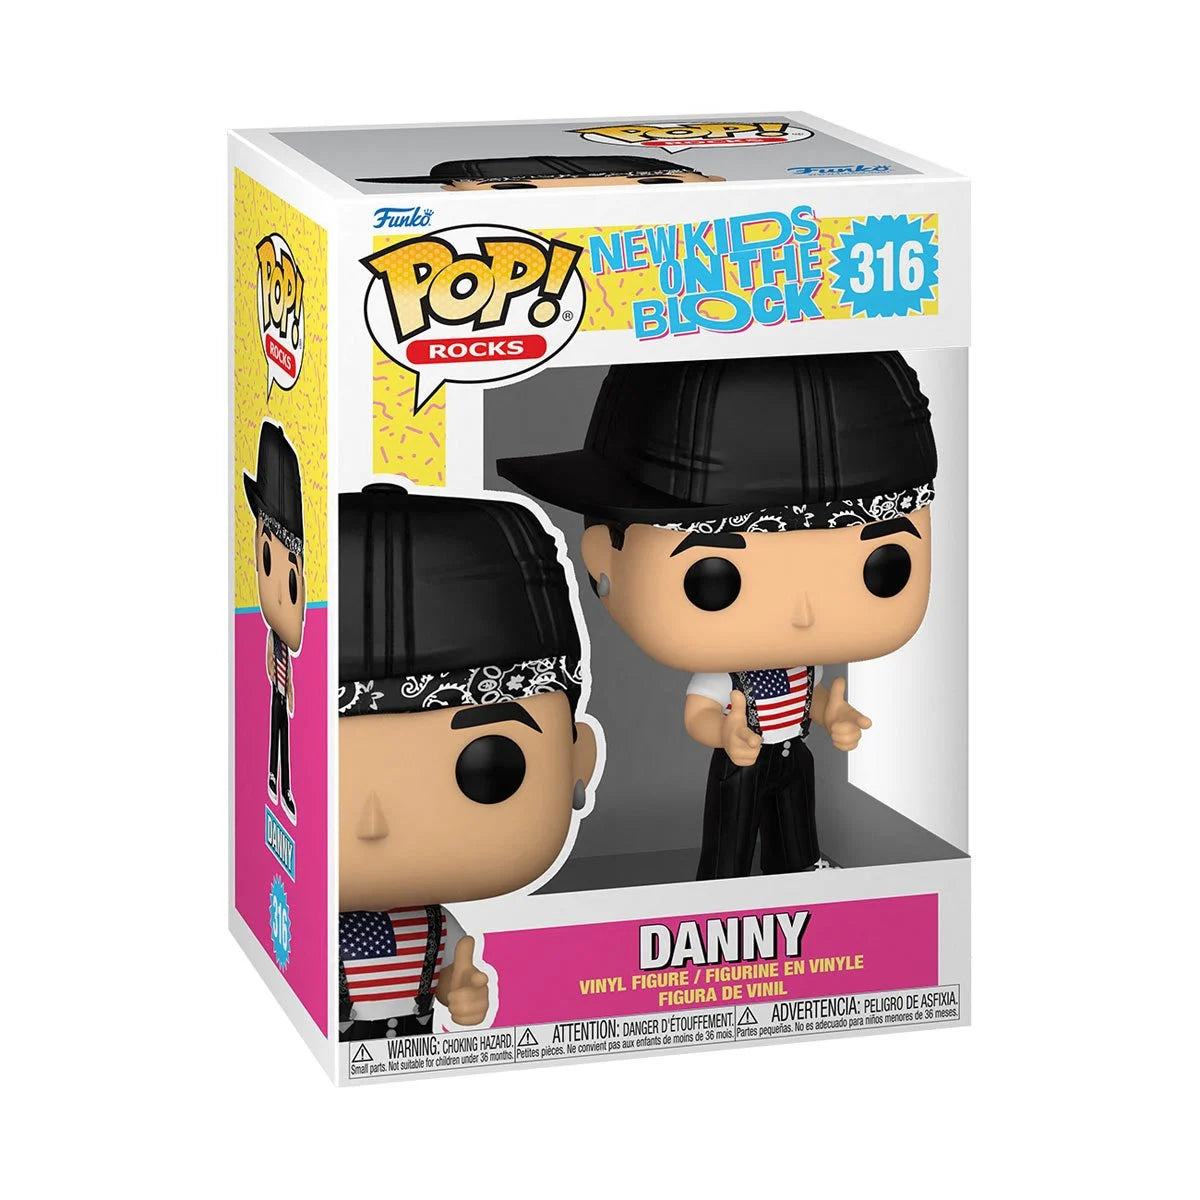 Danny New Kids on the Block Pop! Vinyl Figure